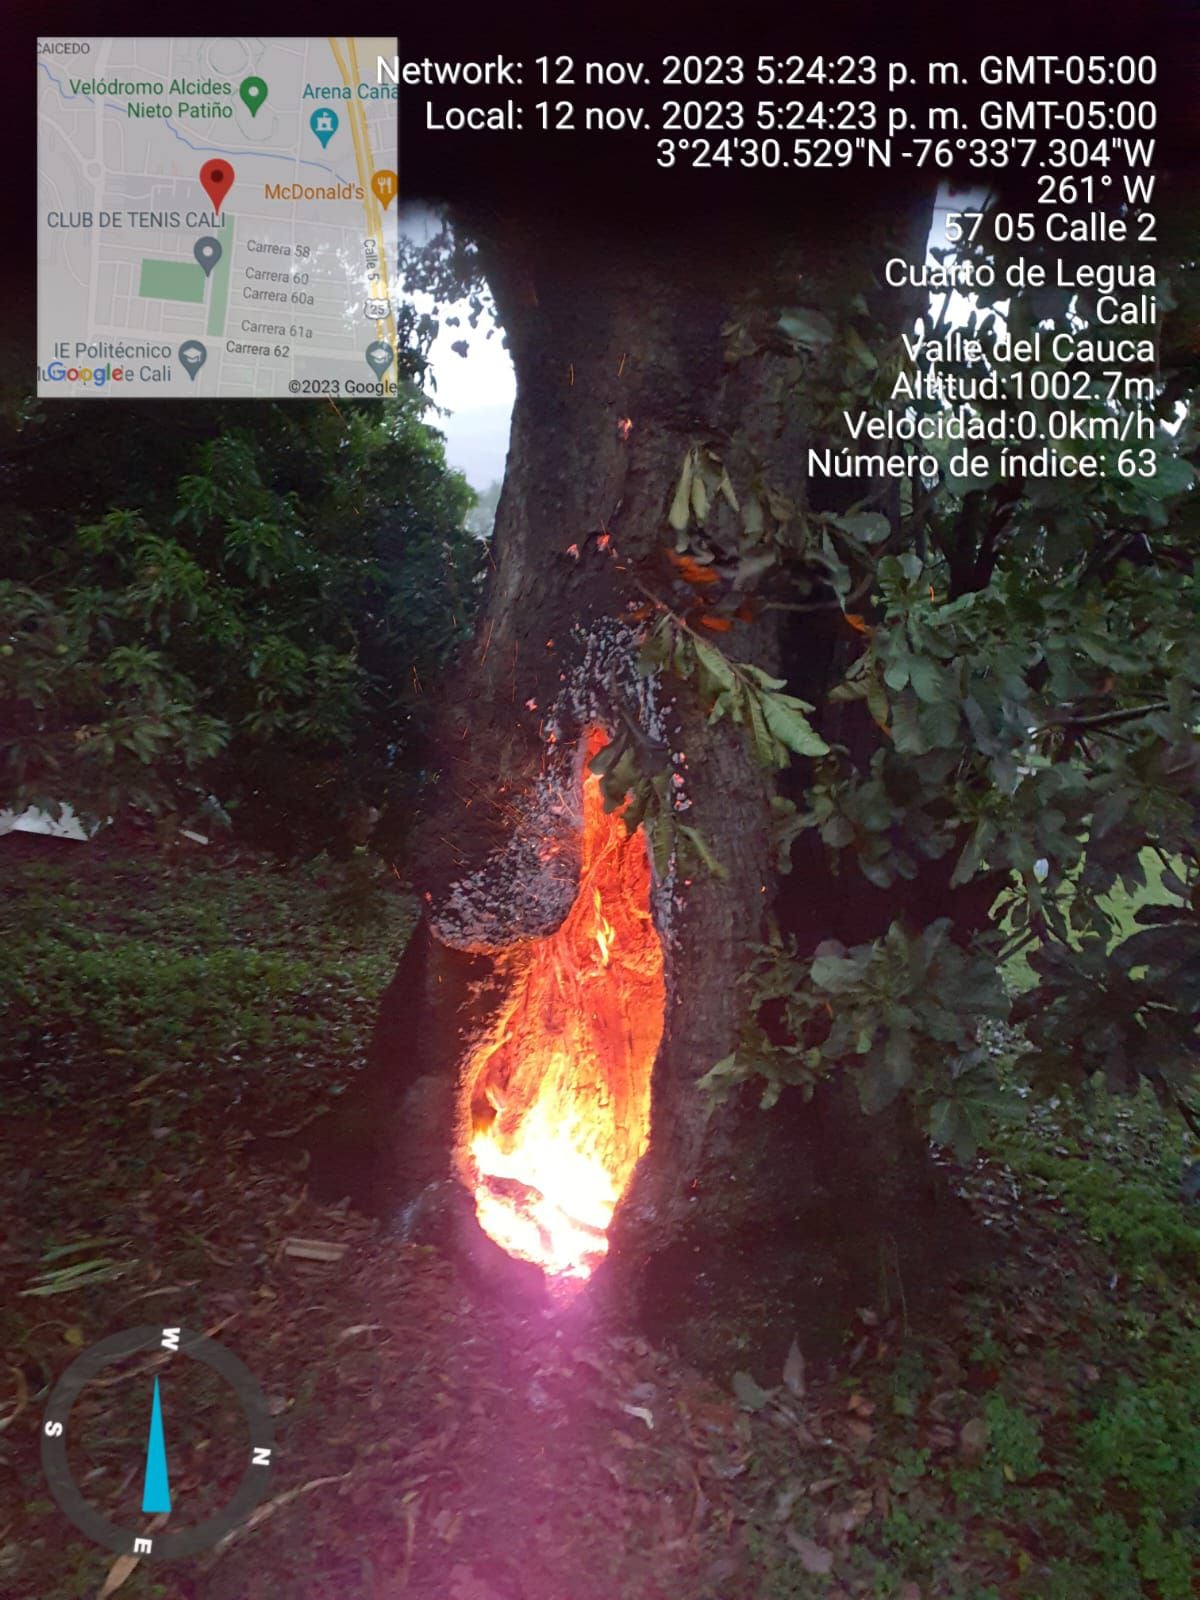 Un rayo impactó sobre el árbol, lo que provocó un incendio que fue controlado.